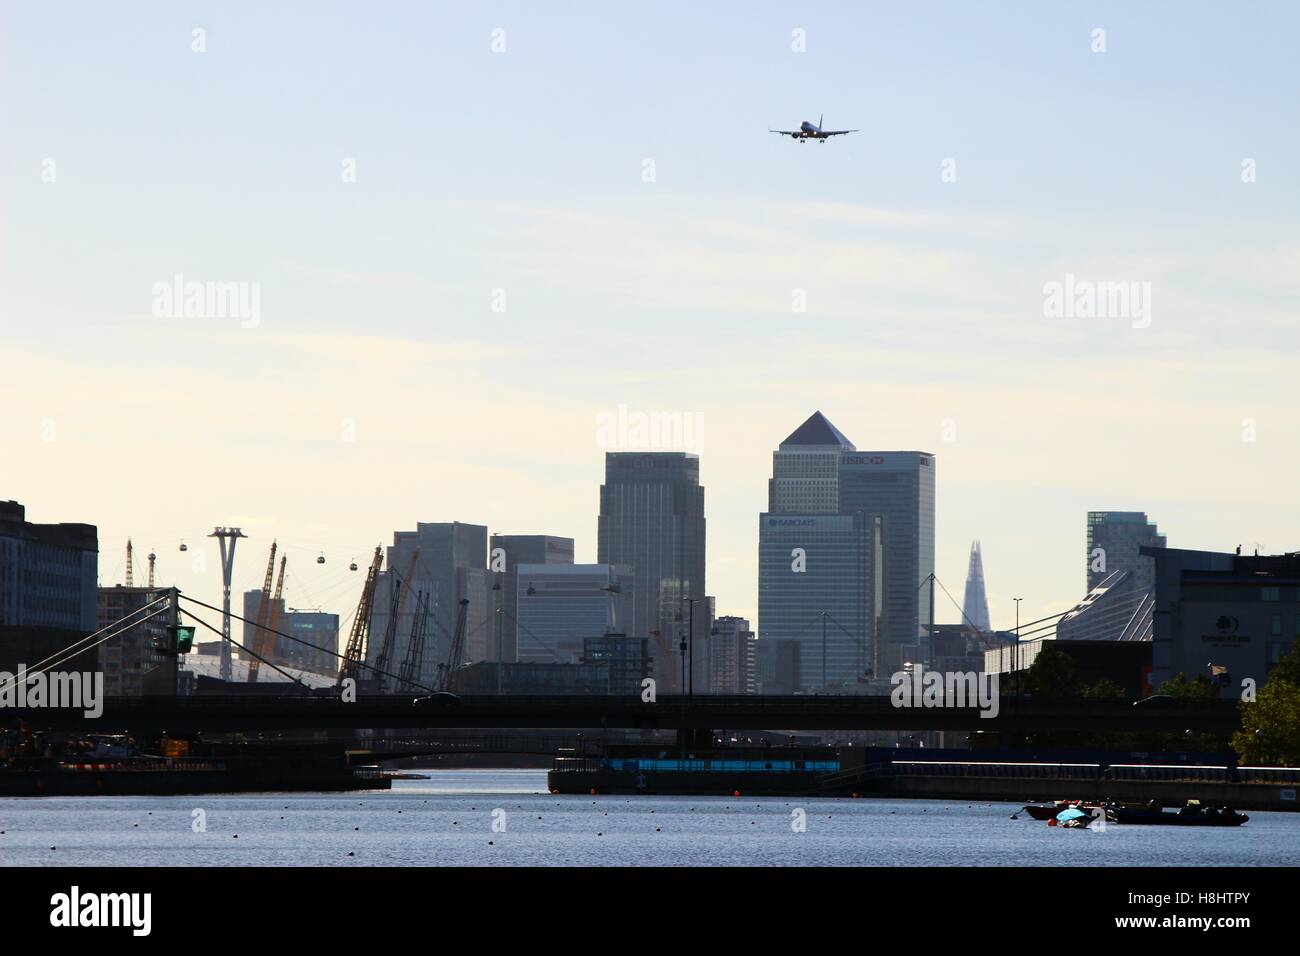 Londres, Royaume-Uni - 11 septembre 2016 : Un Embraer ERJ-190SR par British Airways CityFlyer proche des communistes, en arrière-plan Canary Wharf Banque D'Images